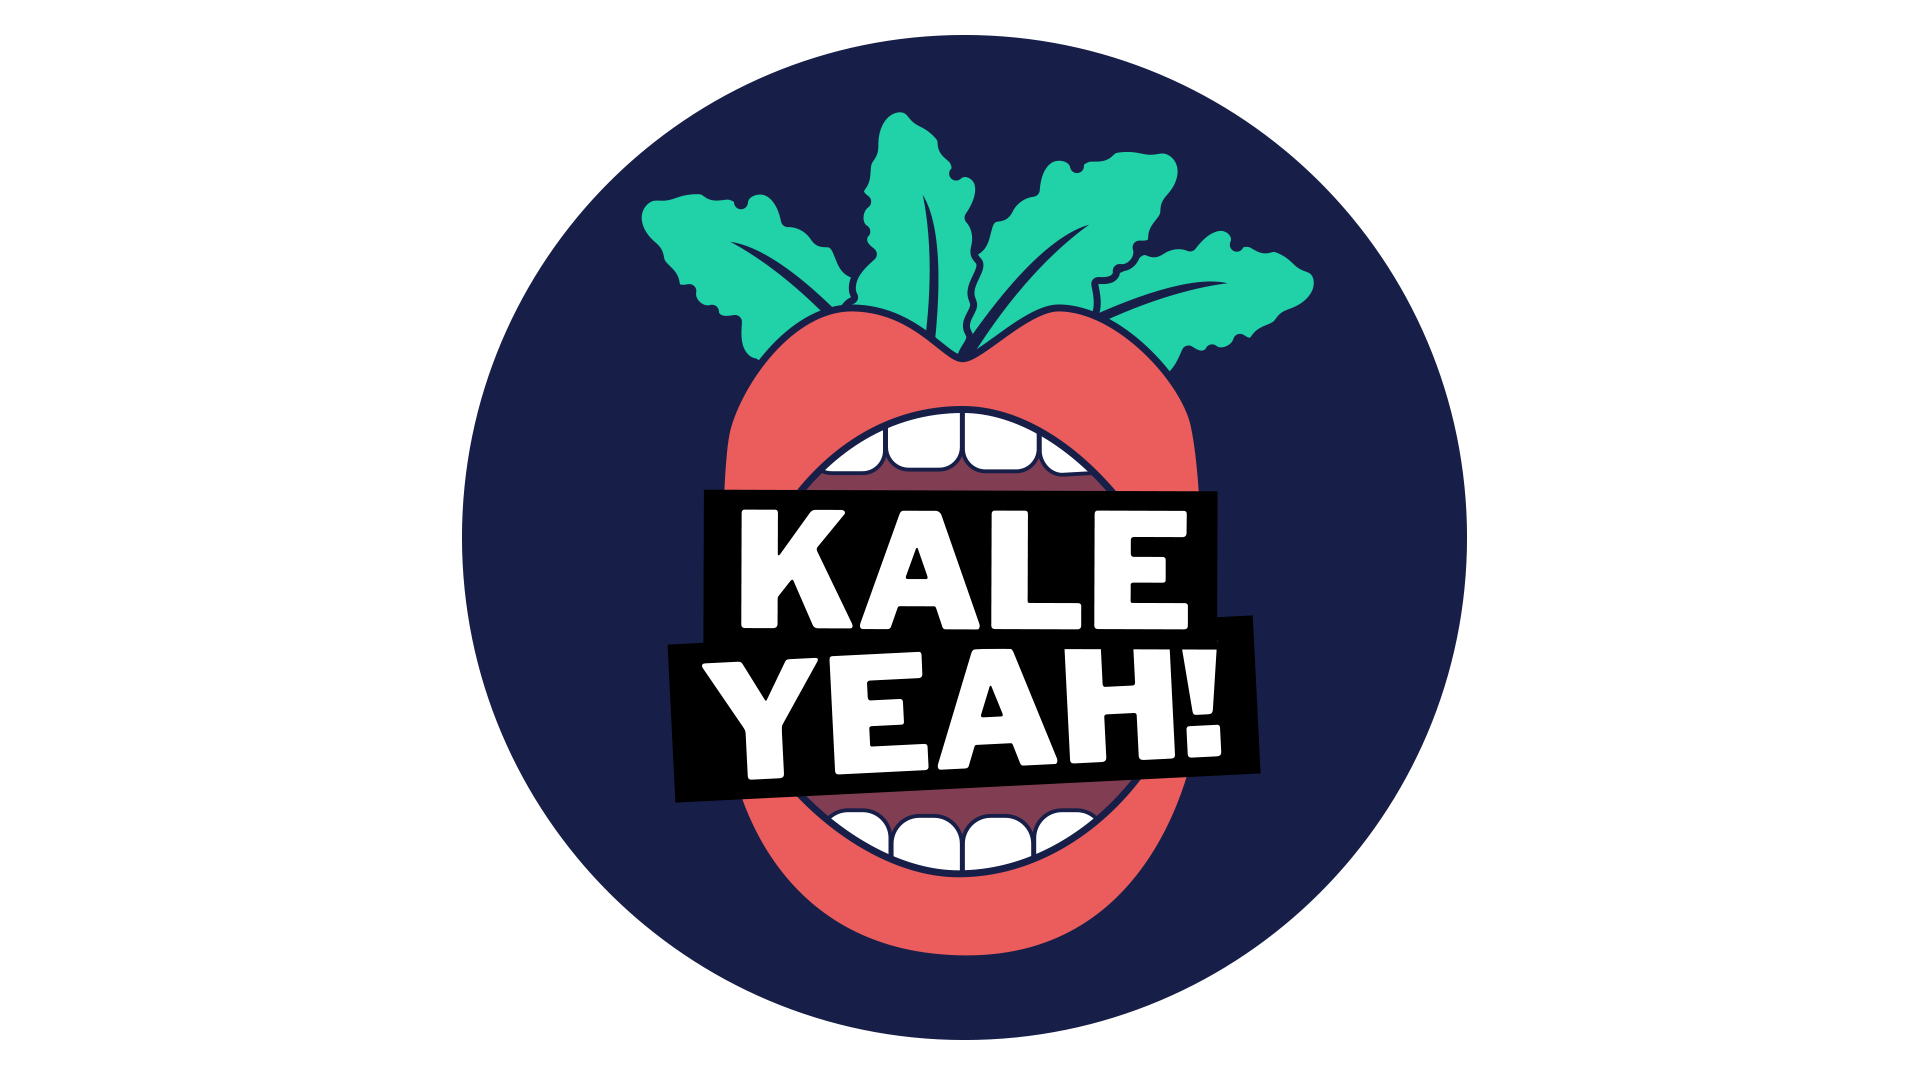 Kale Yeah! round logo